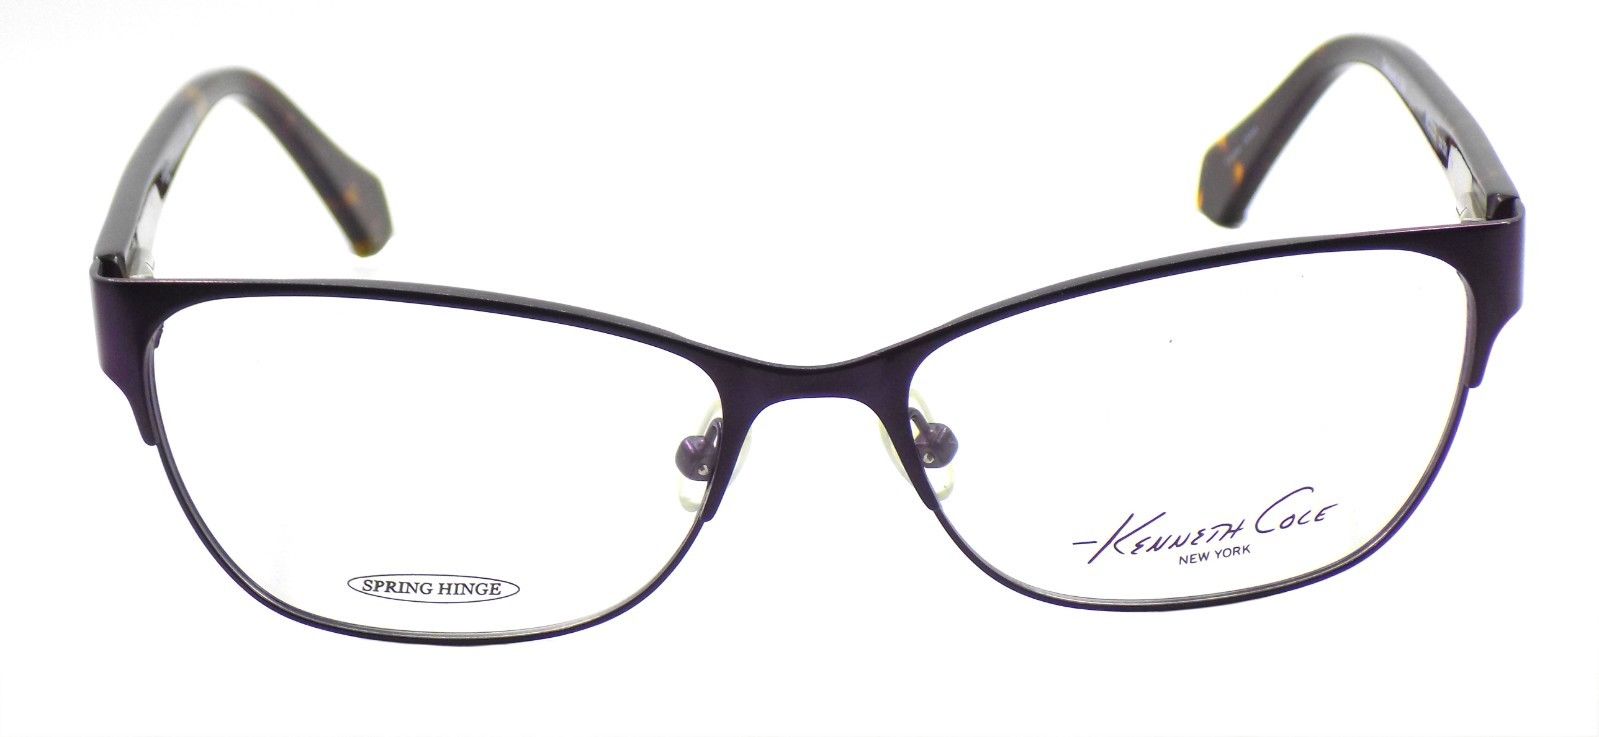 2-Kenneth Cole NY KC0232 091 Women's Eyeglasses Frames 54-16-140 Matte Purple-664689709809-IKSpecs